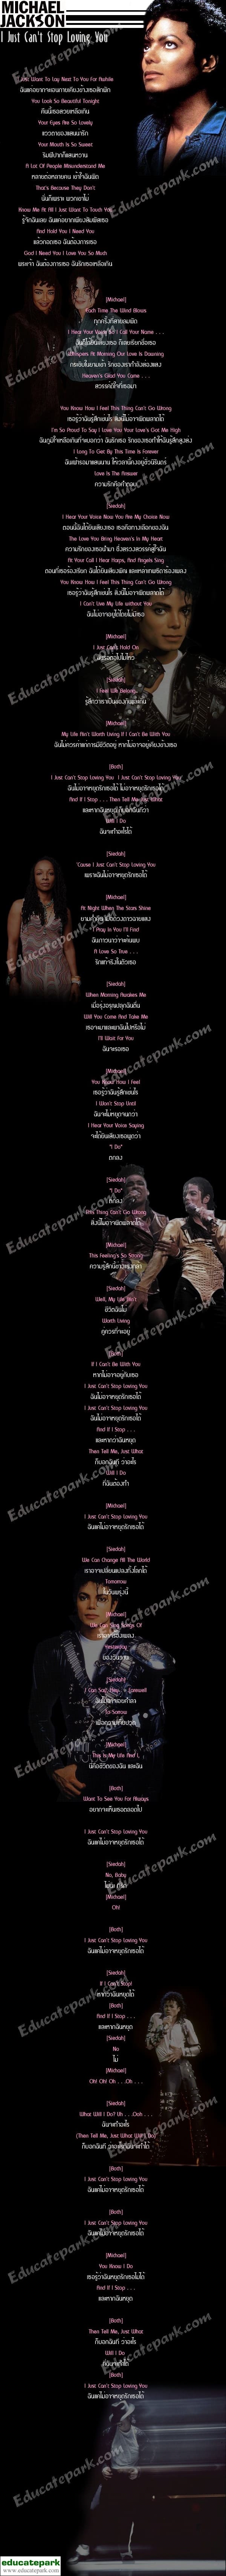 แปลเพลง I Just Can't Stop Loving You - Michael Jackson